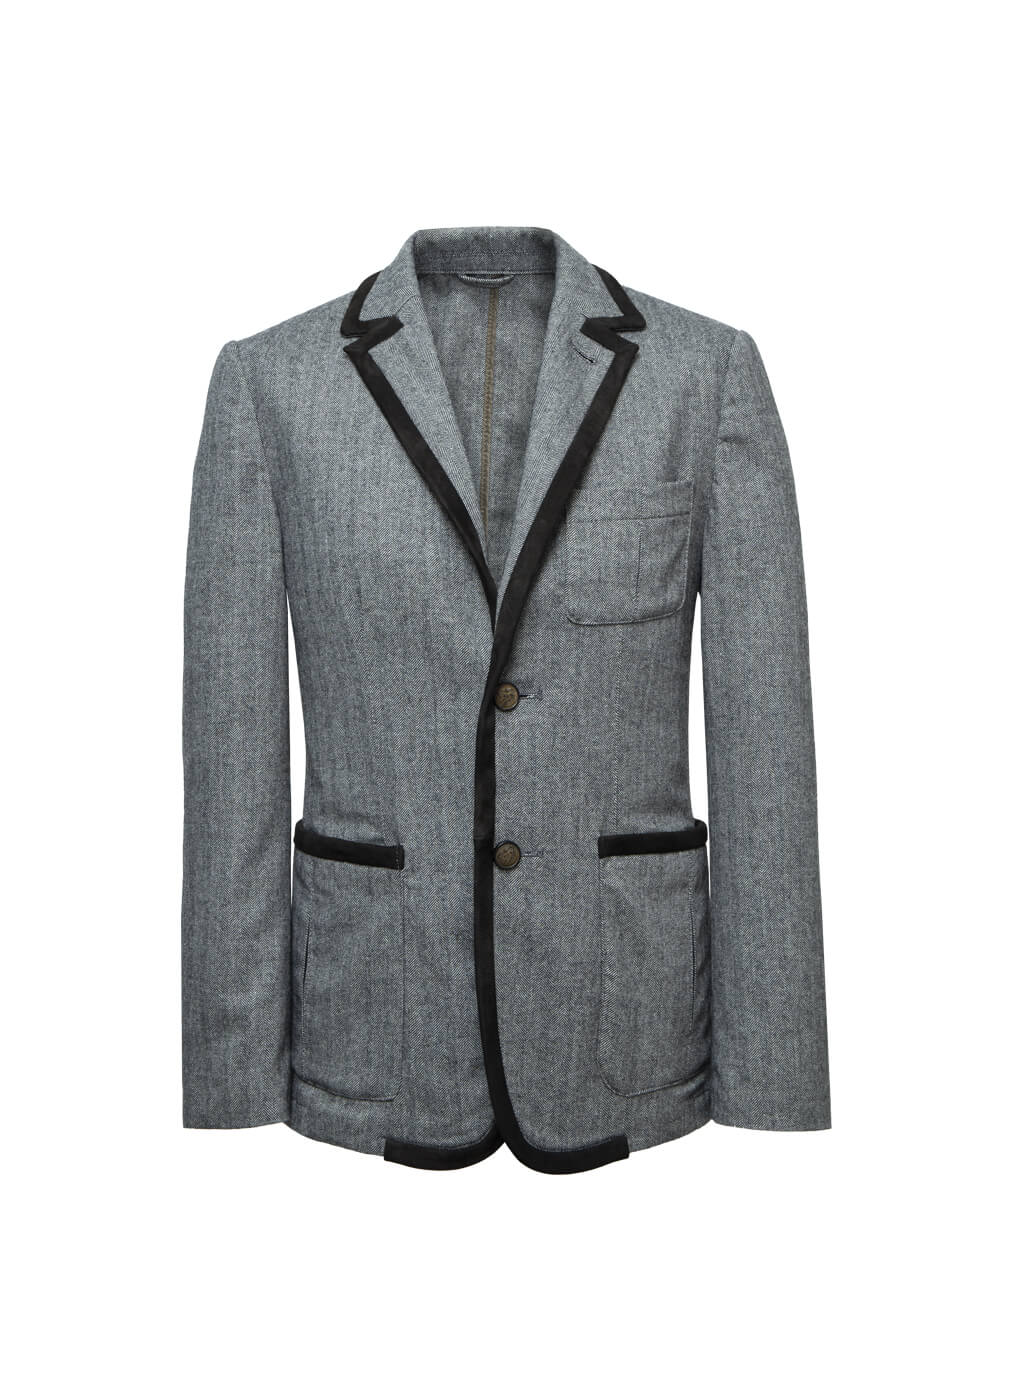 Fabric Jacket Men “Ryedale”, stone